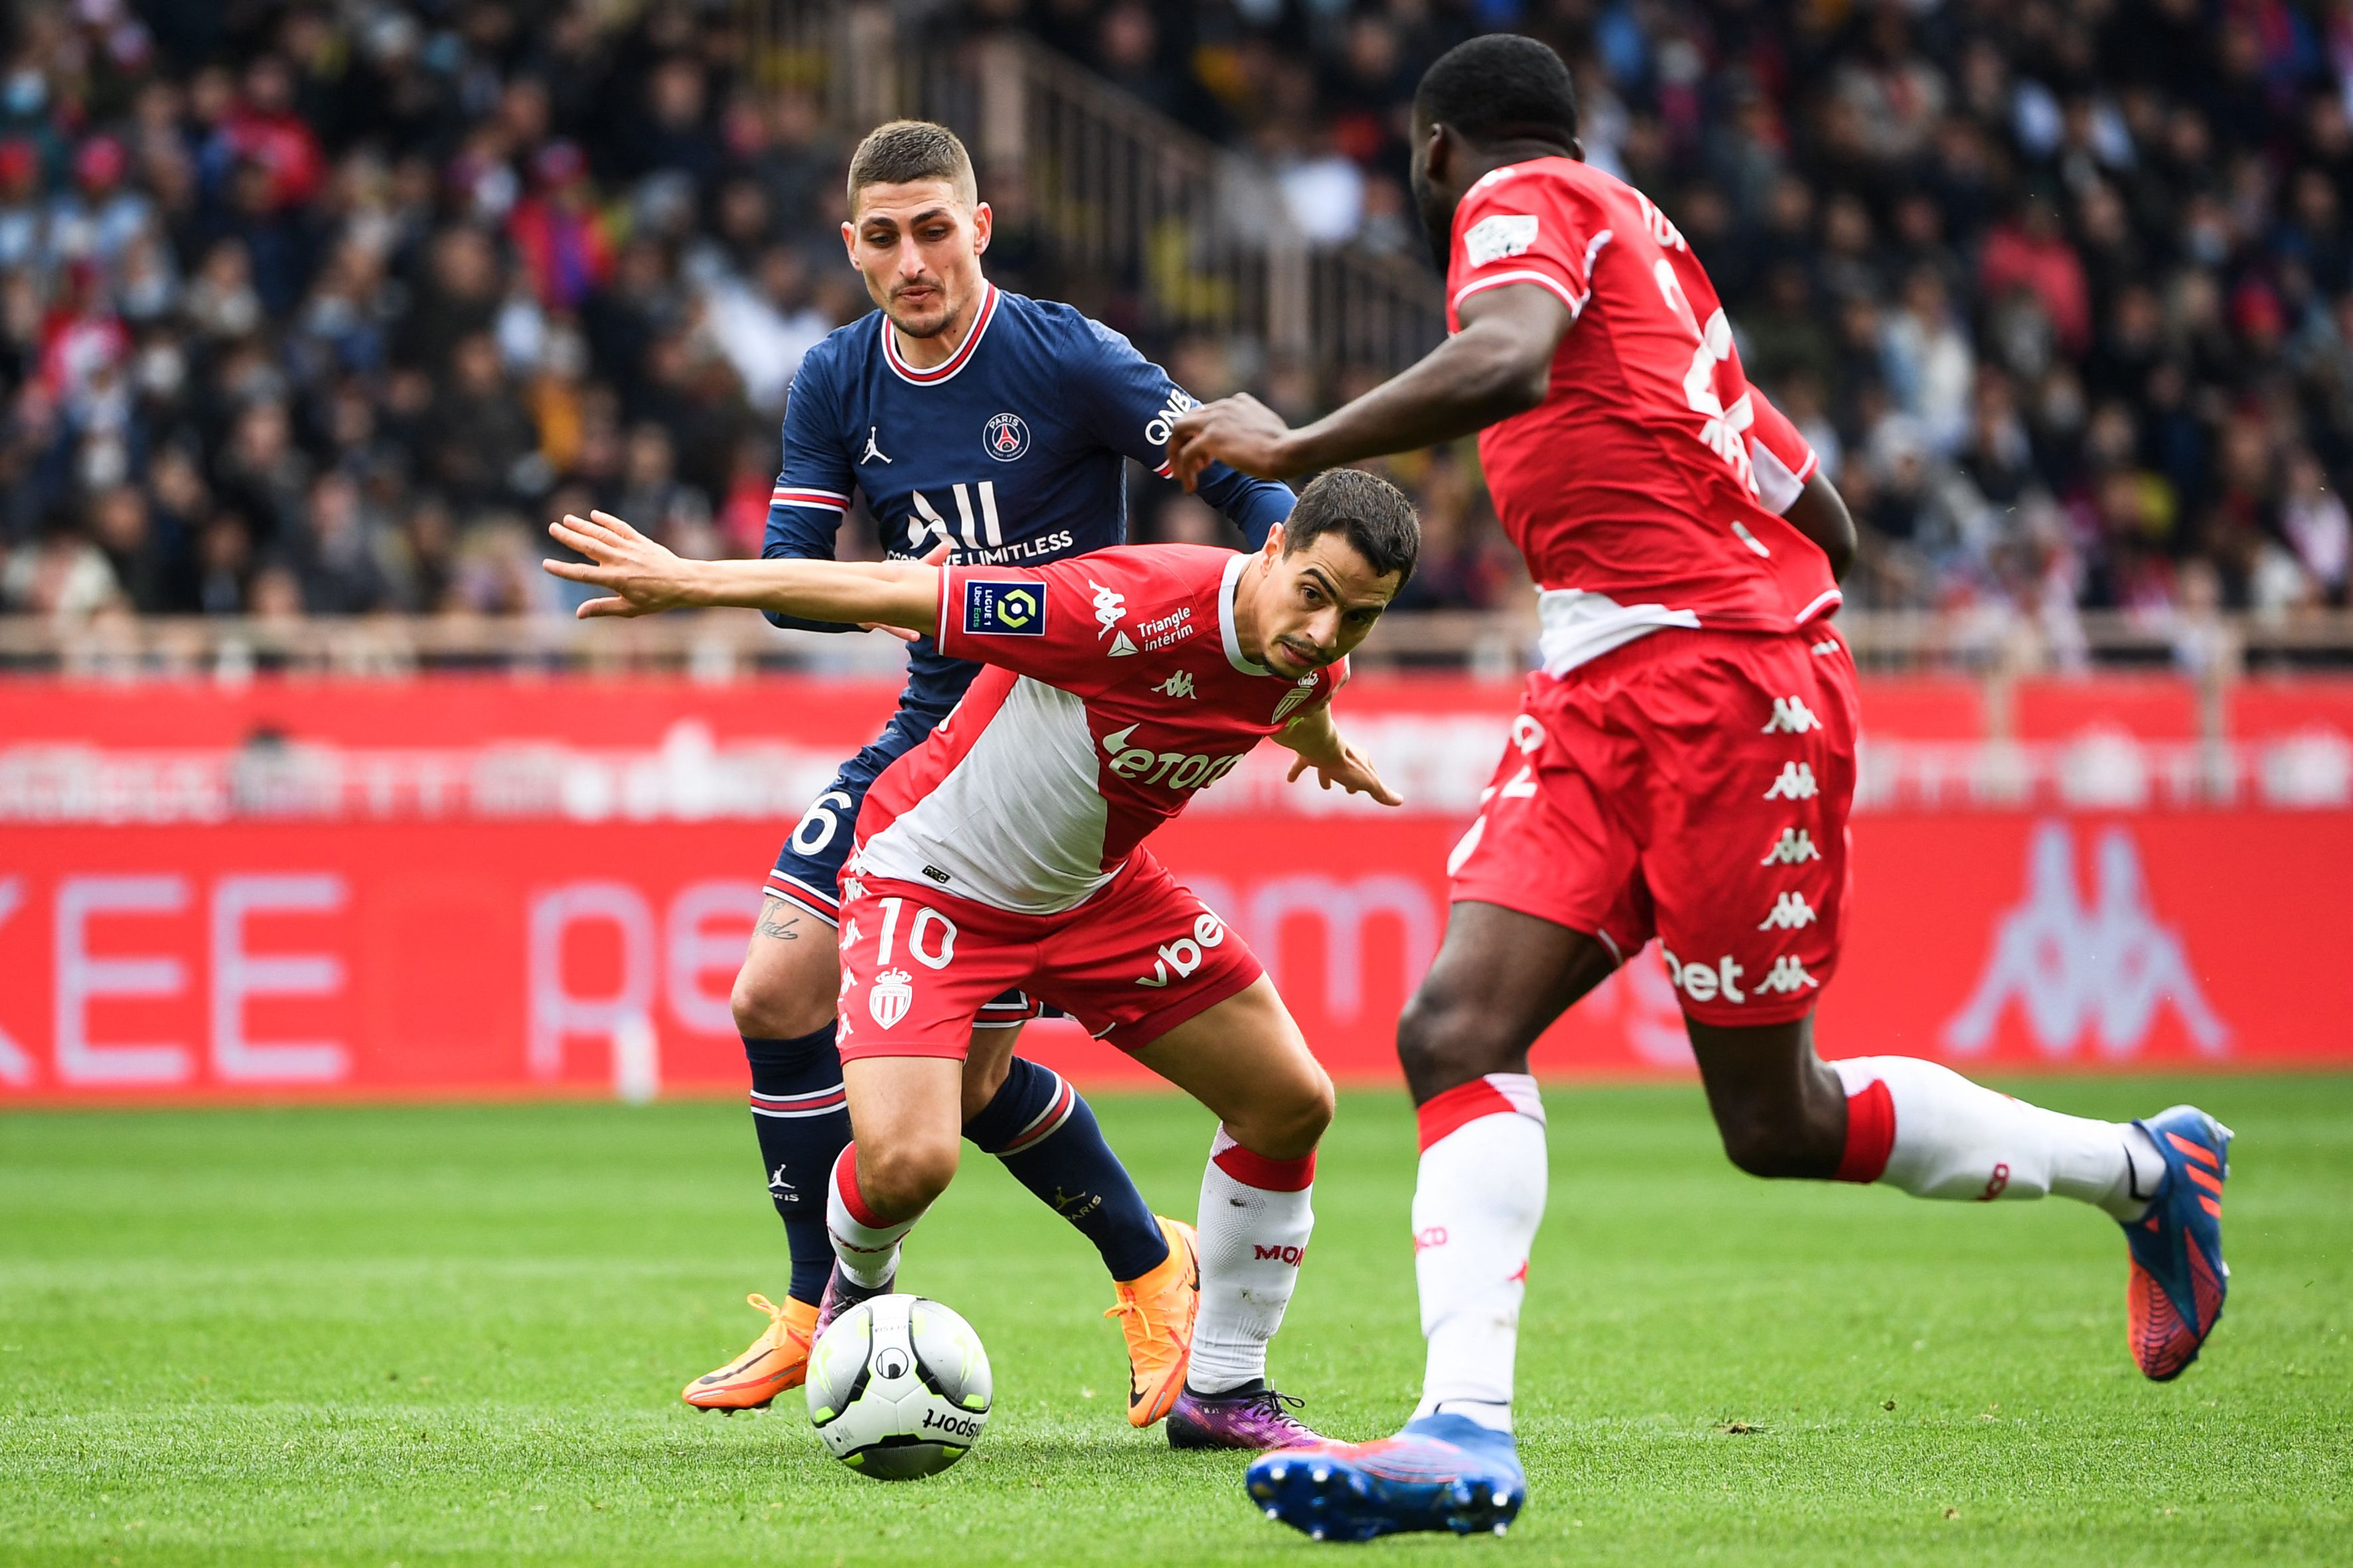 Video: Wissam Ben Yedder Converts a Penalty Kick to Score Brace